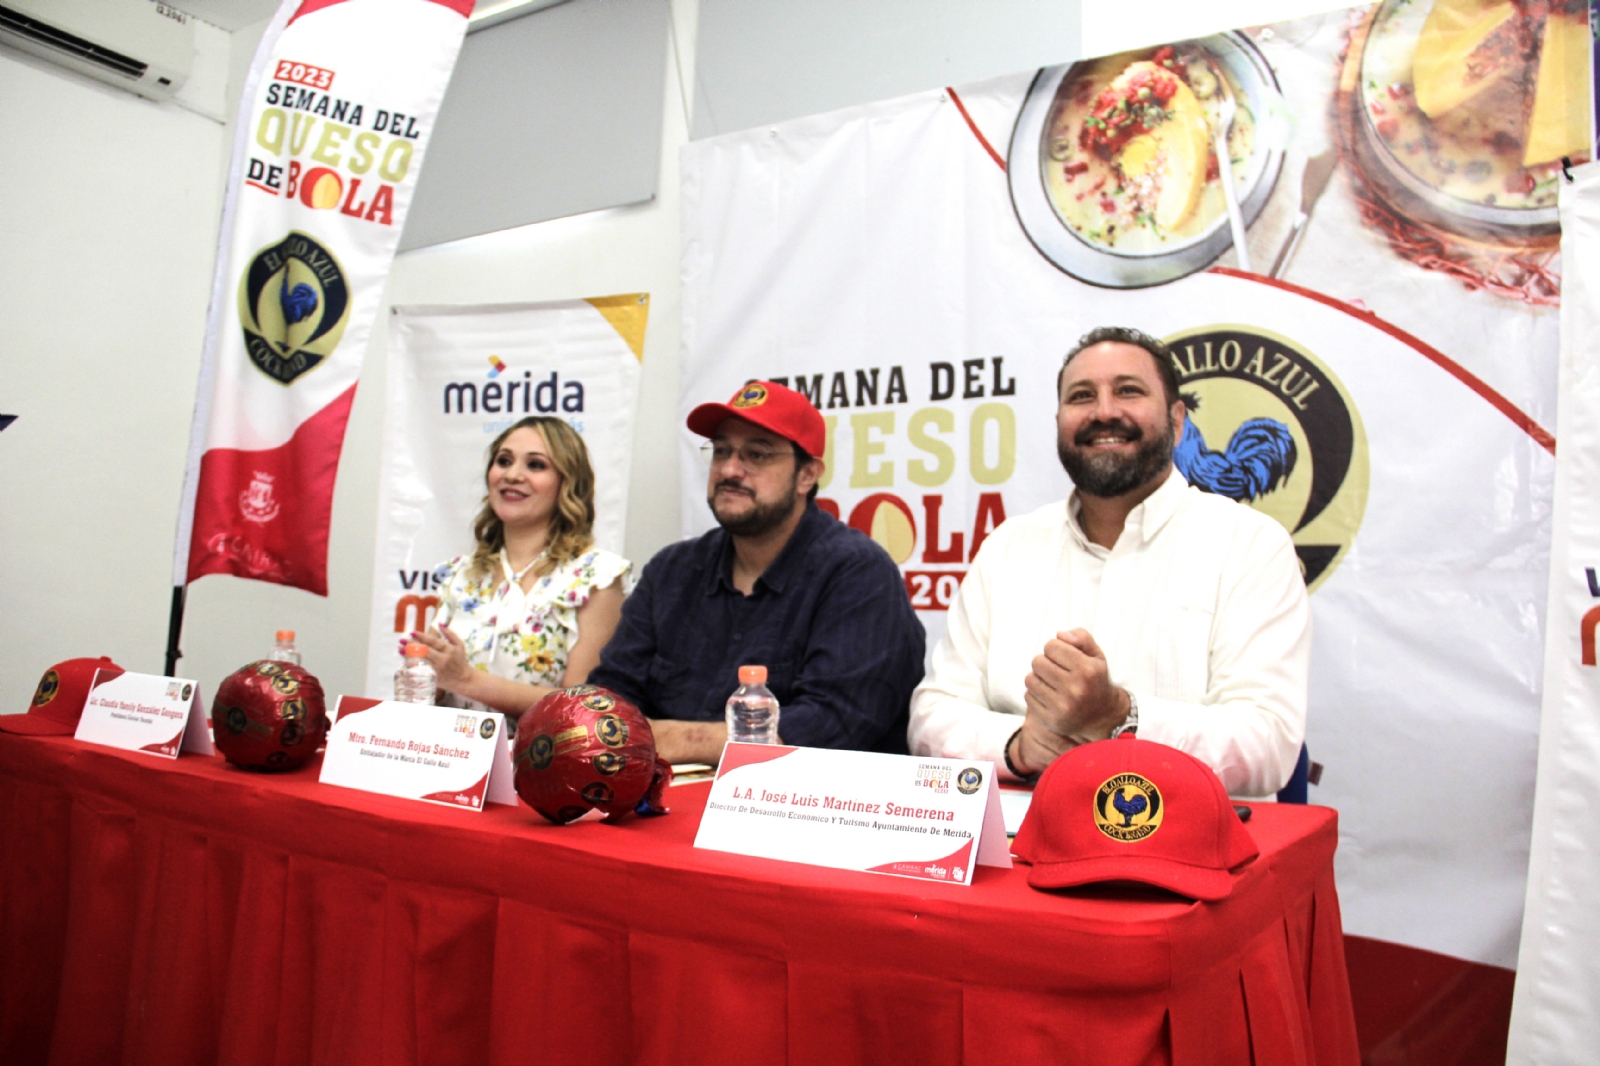 Semana del Queso de Bola en Mérida: ¿Cuándo y dónde será?